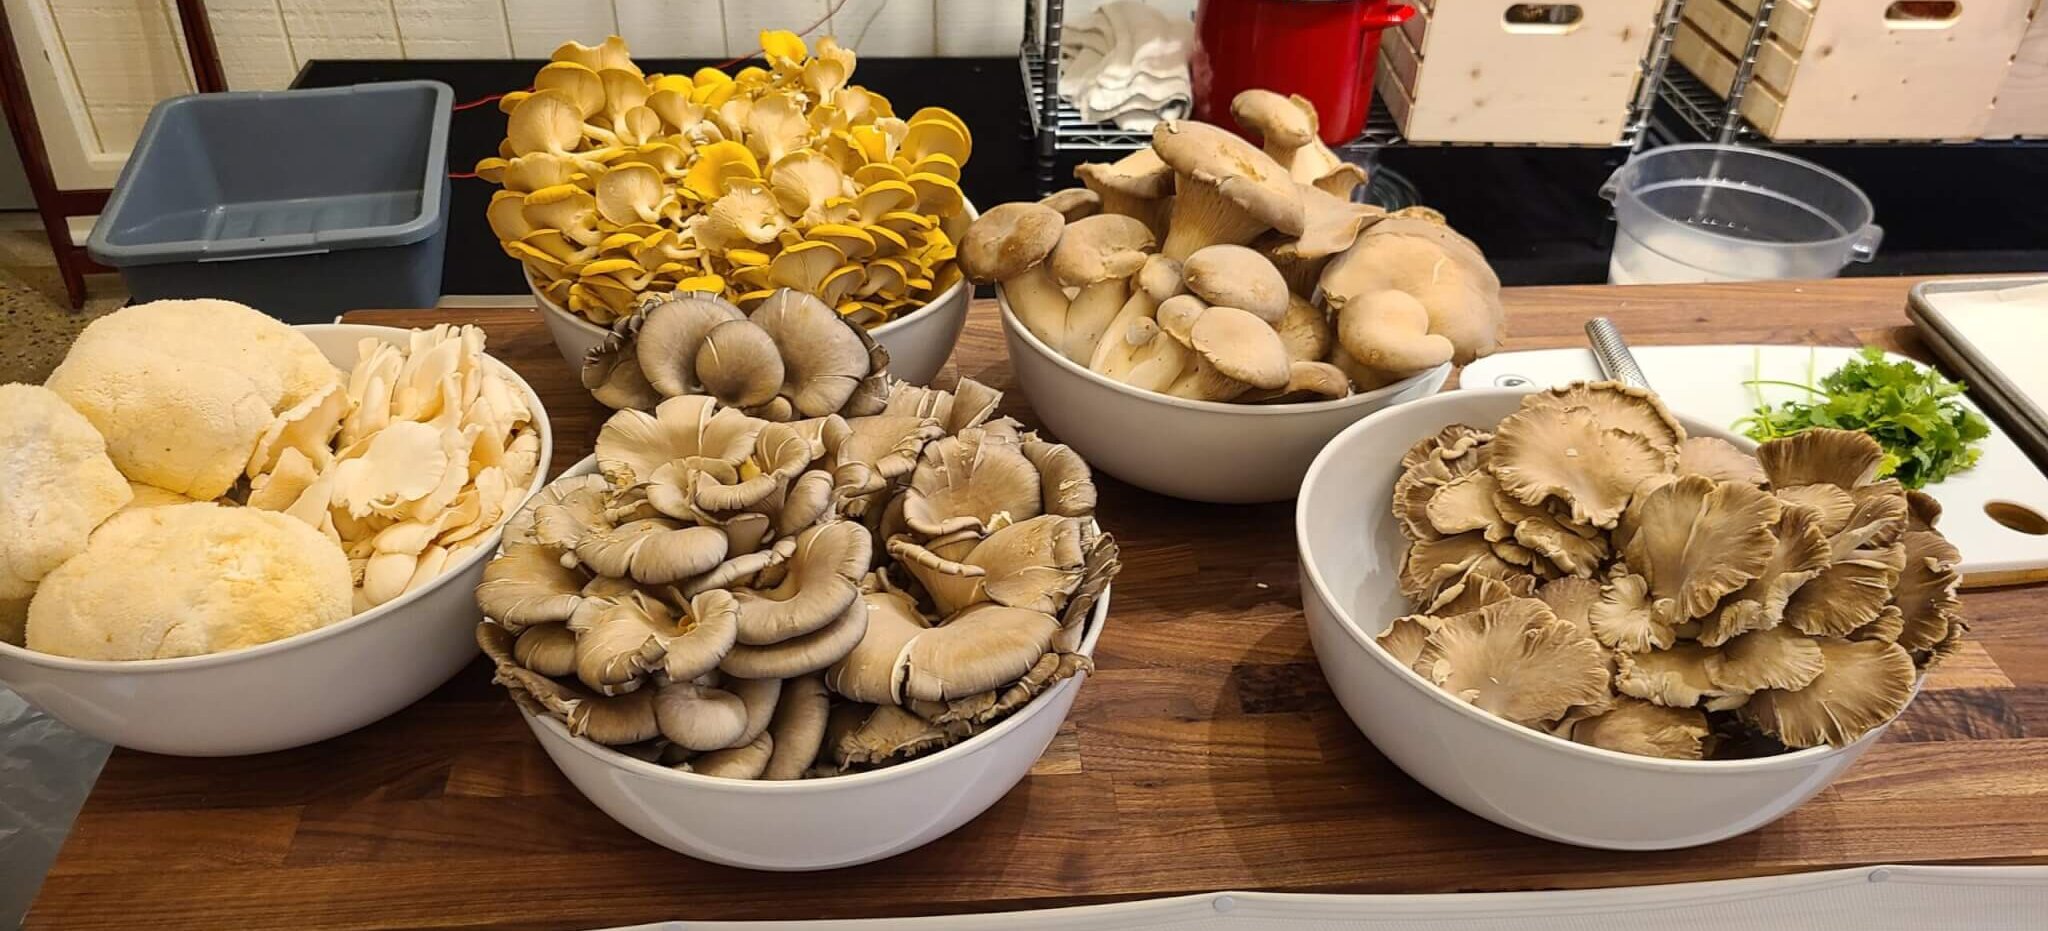 Mushroom Stir Fry | Pebble Creek Produce